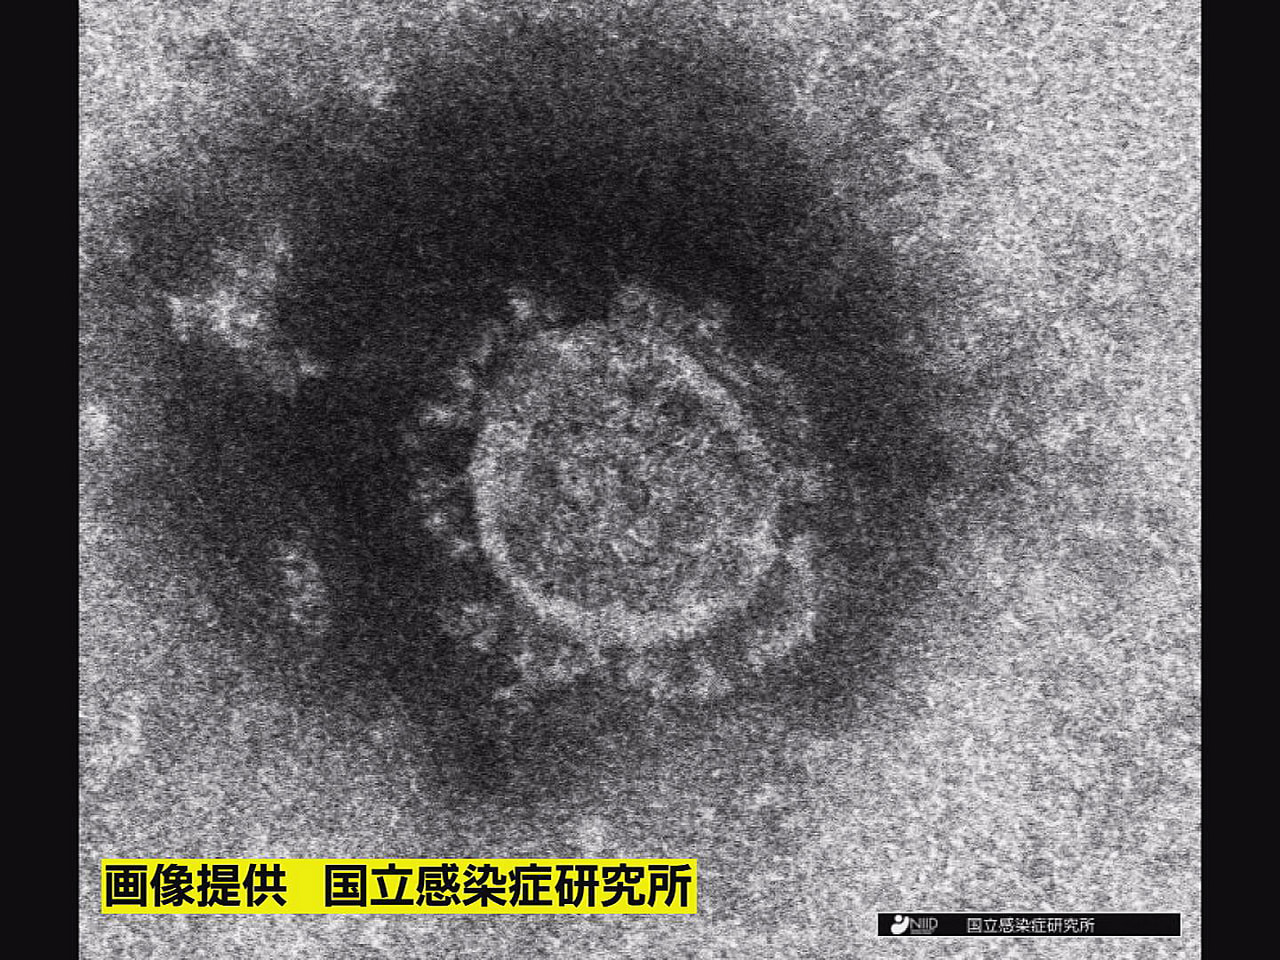 岐阜県と岐阜市は１３日、新型コロナウイルスの感染者が新たに９９２人確認されたと発...